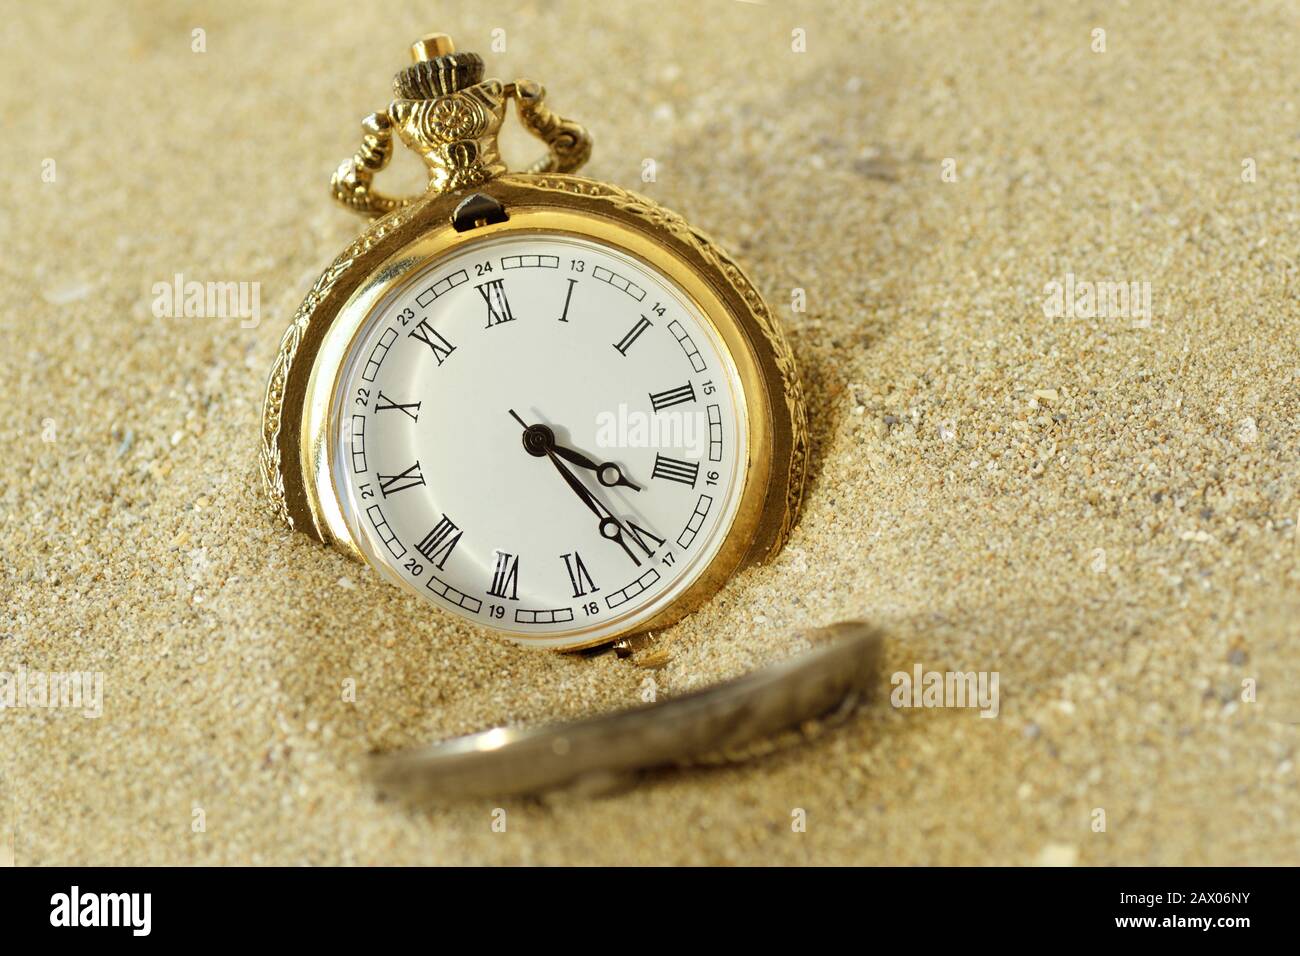 Taschenuhr im Sand - Zeitverpassungskonzept Stockfoto